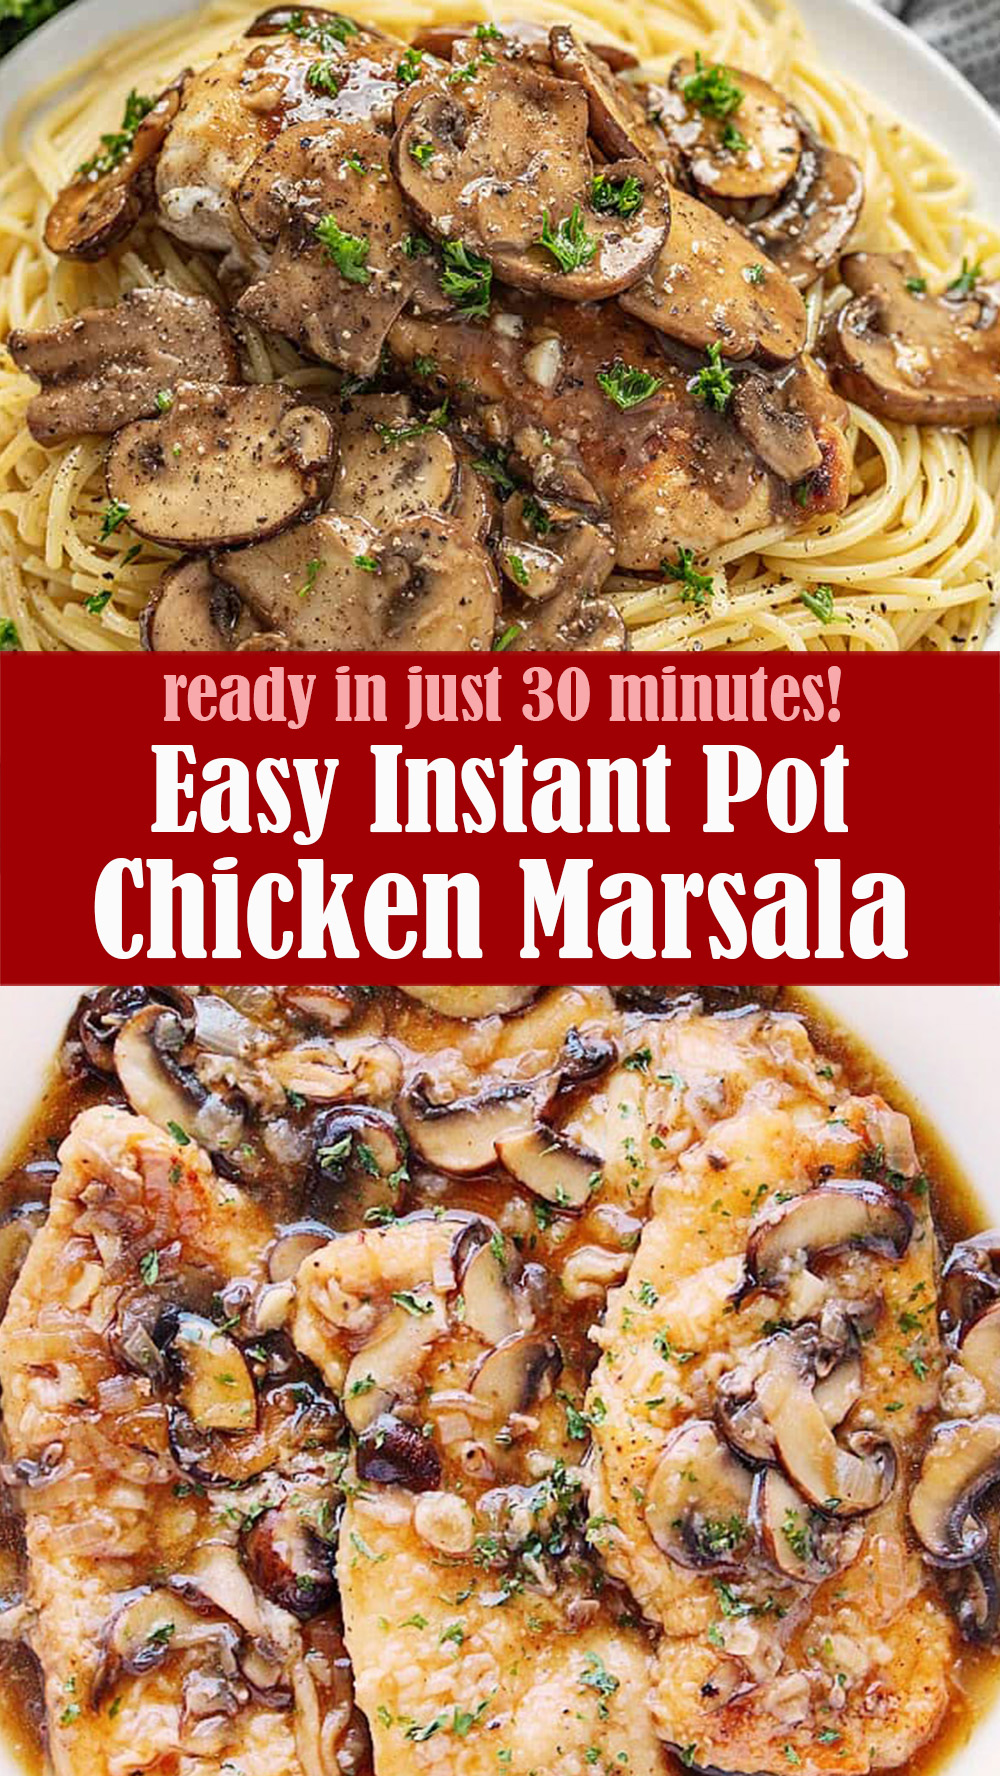 Easy Instant Pot Chicken Marsala